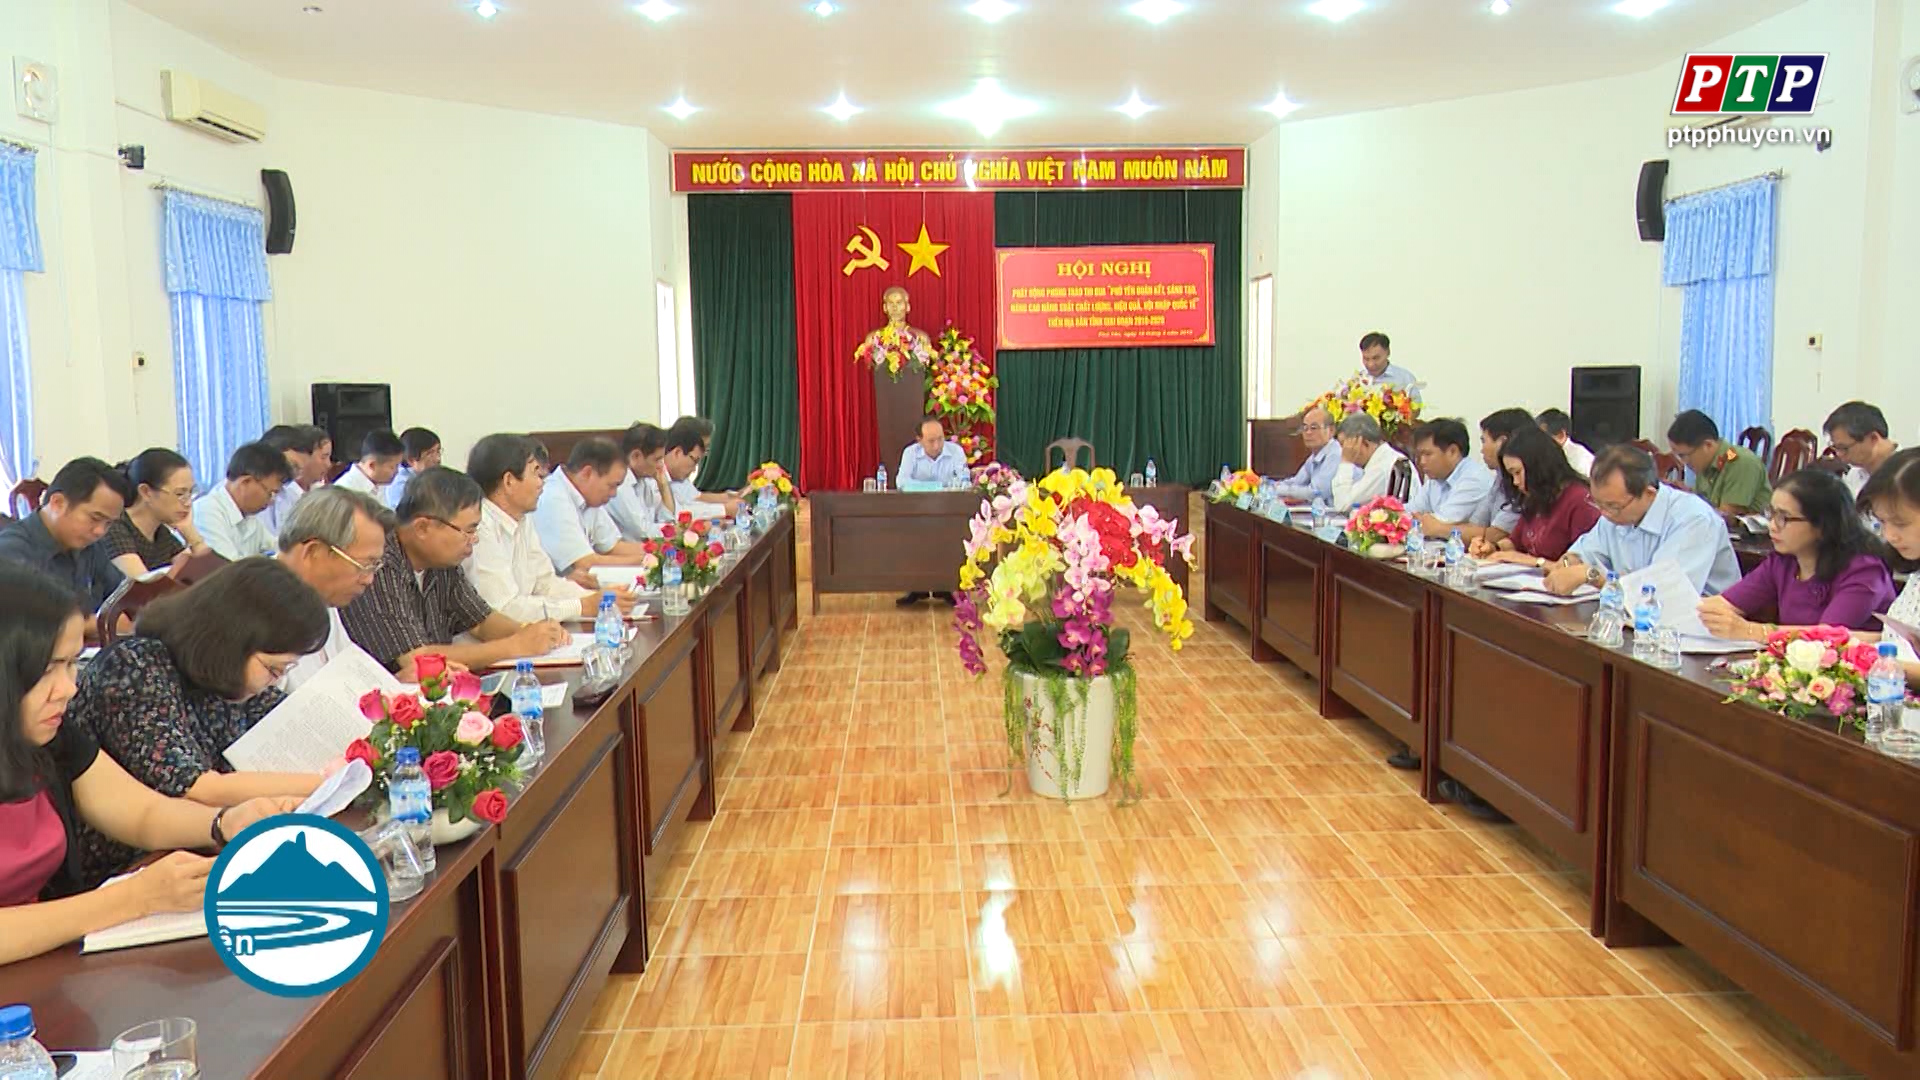 Triển khai thực hiện phong trào Thi đua trên địa bàn tỉnh Phú Yên giai đoạn 2018 - 2020